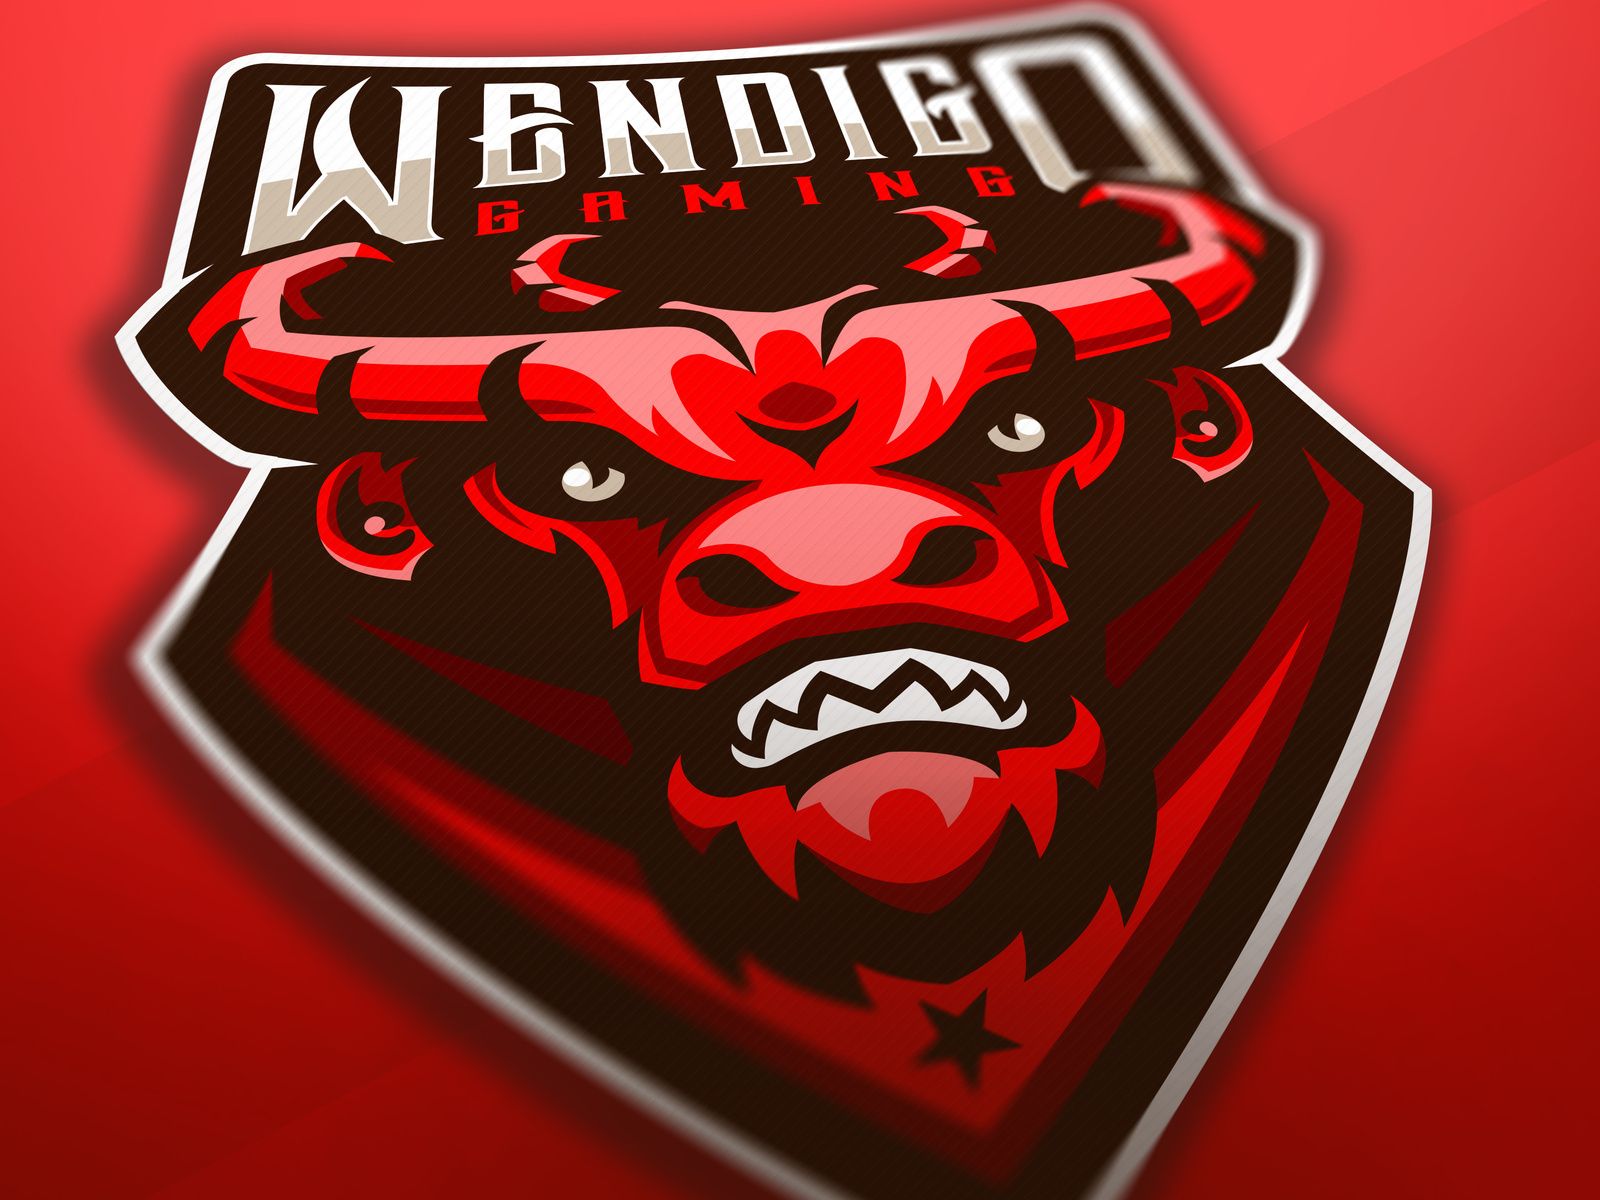 Wendigo gaming mascot logo